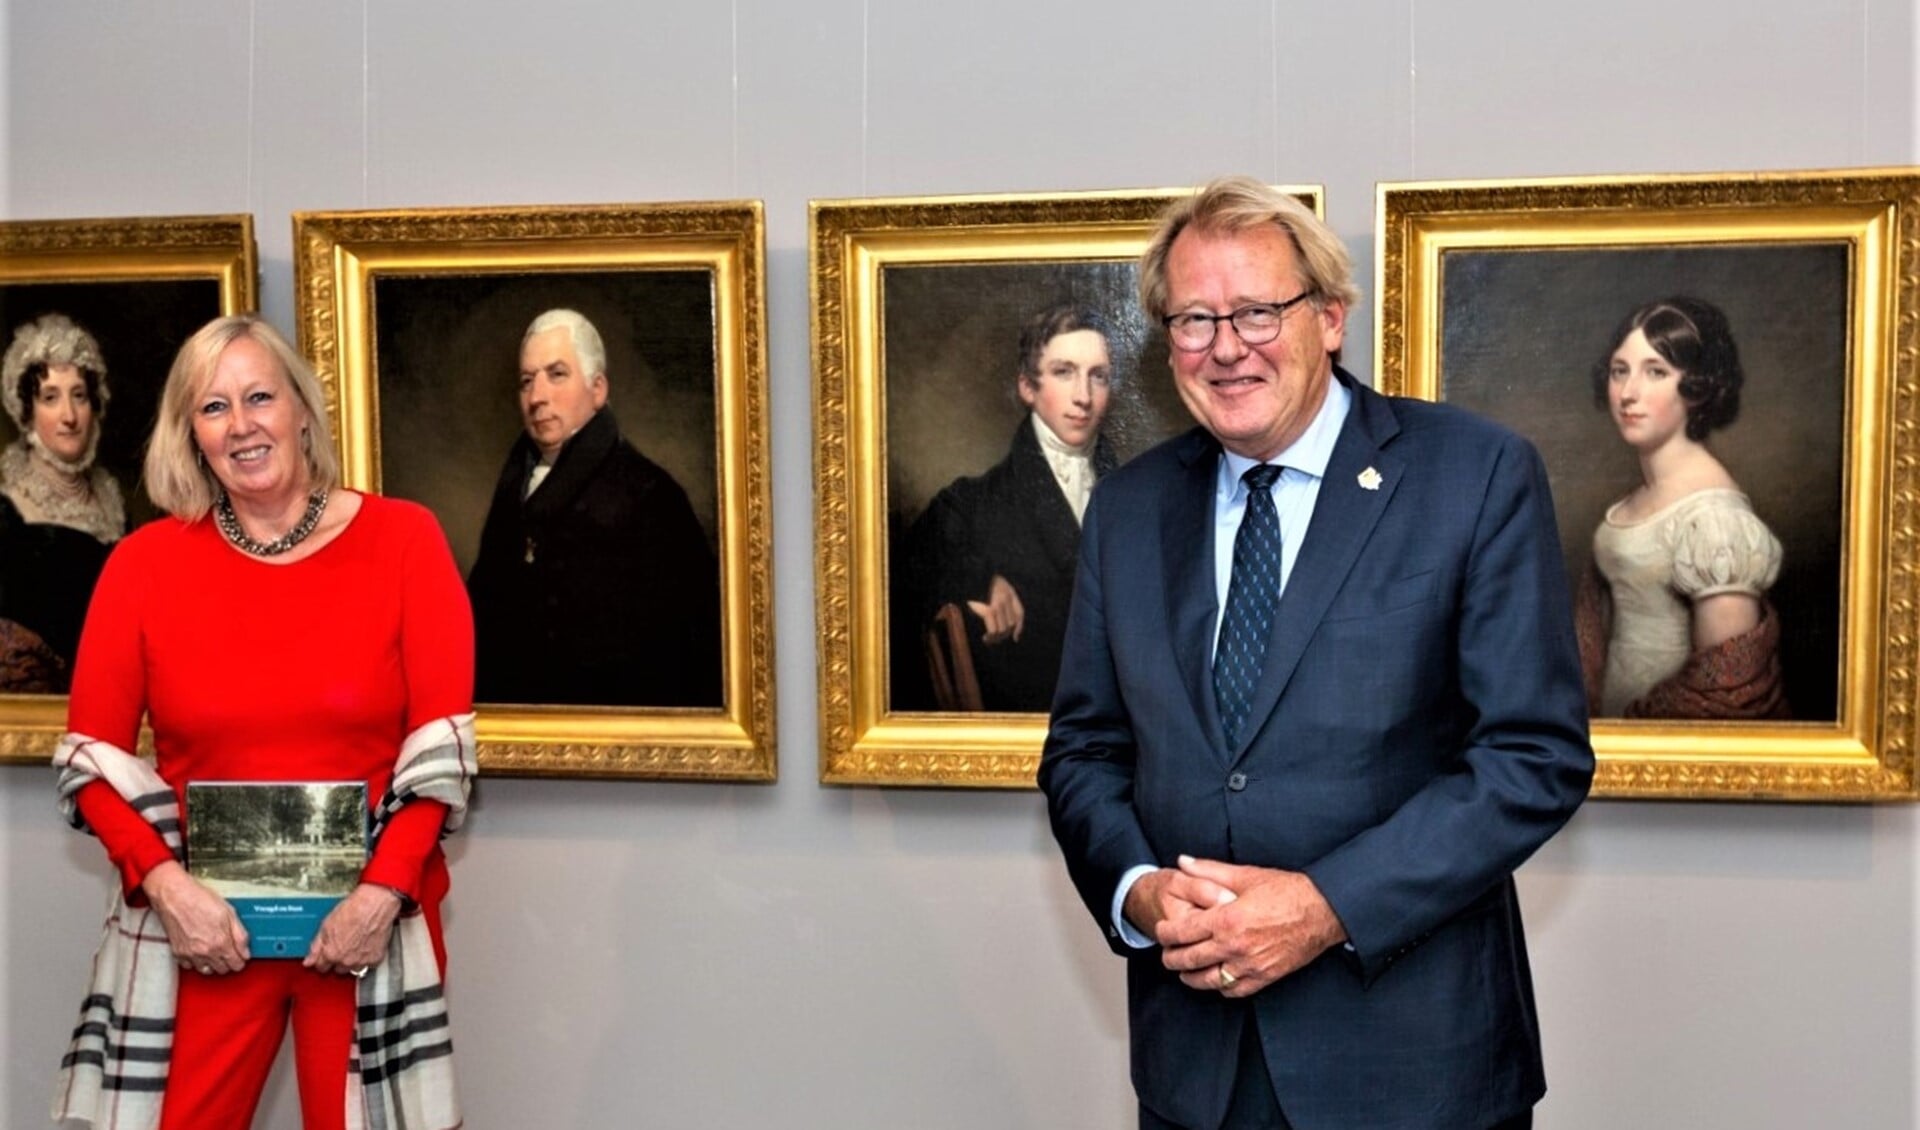 Wethouder Astrid van Eekelen en de Commisaris van de Koning Jaap Smit bij de opening van de tentoonstelling (foto: Charles Groeneveld).